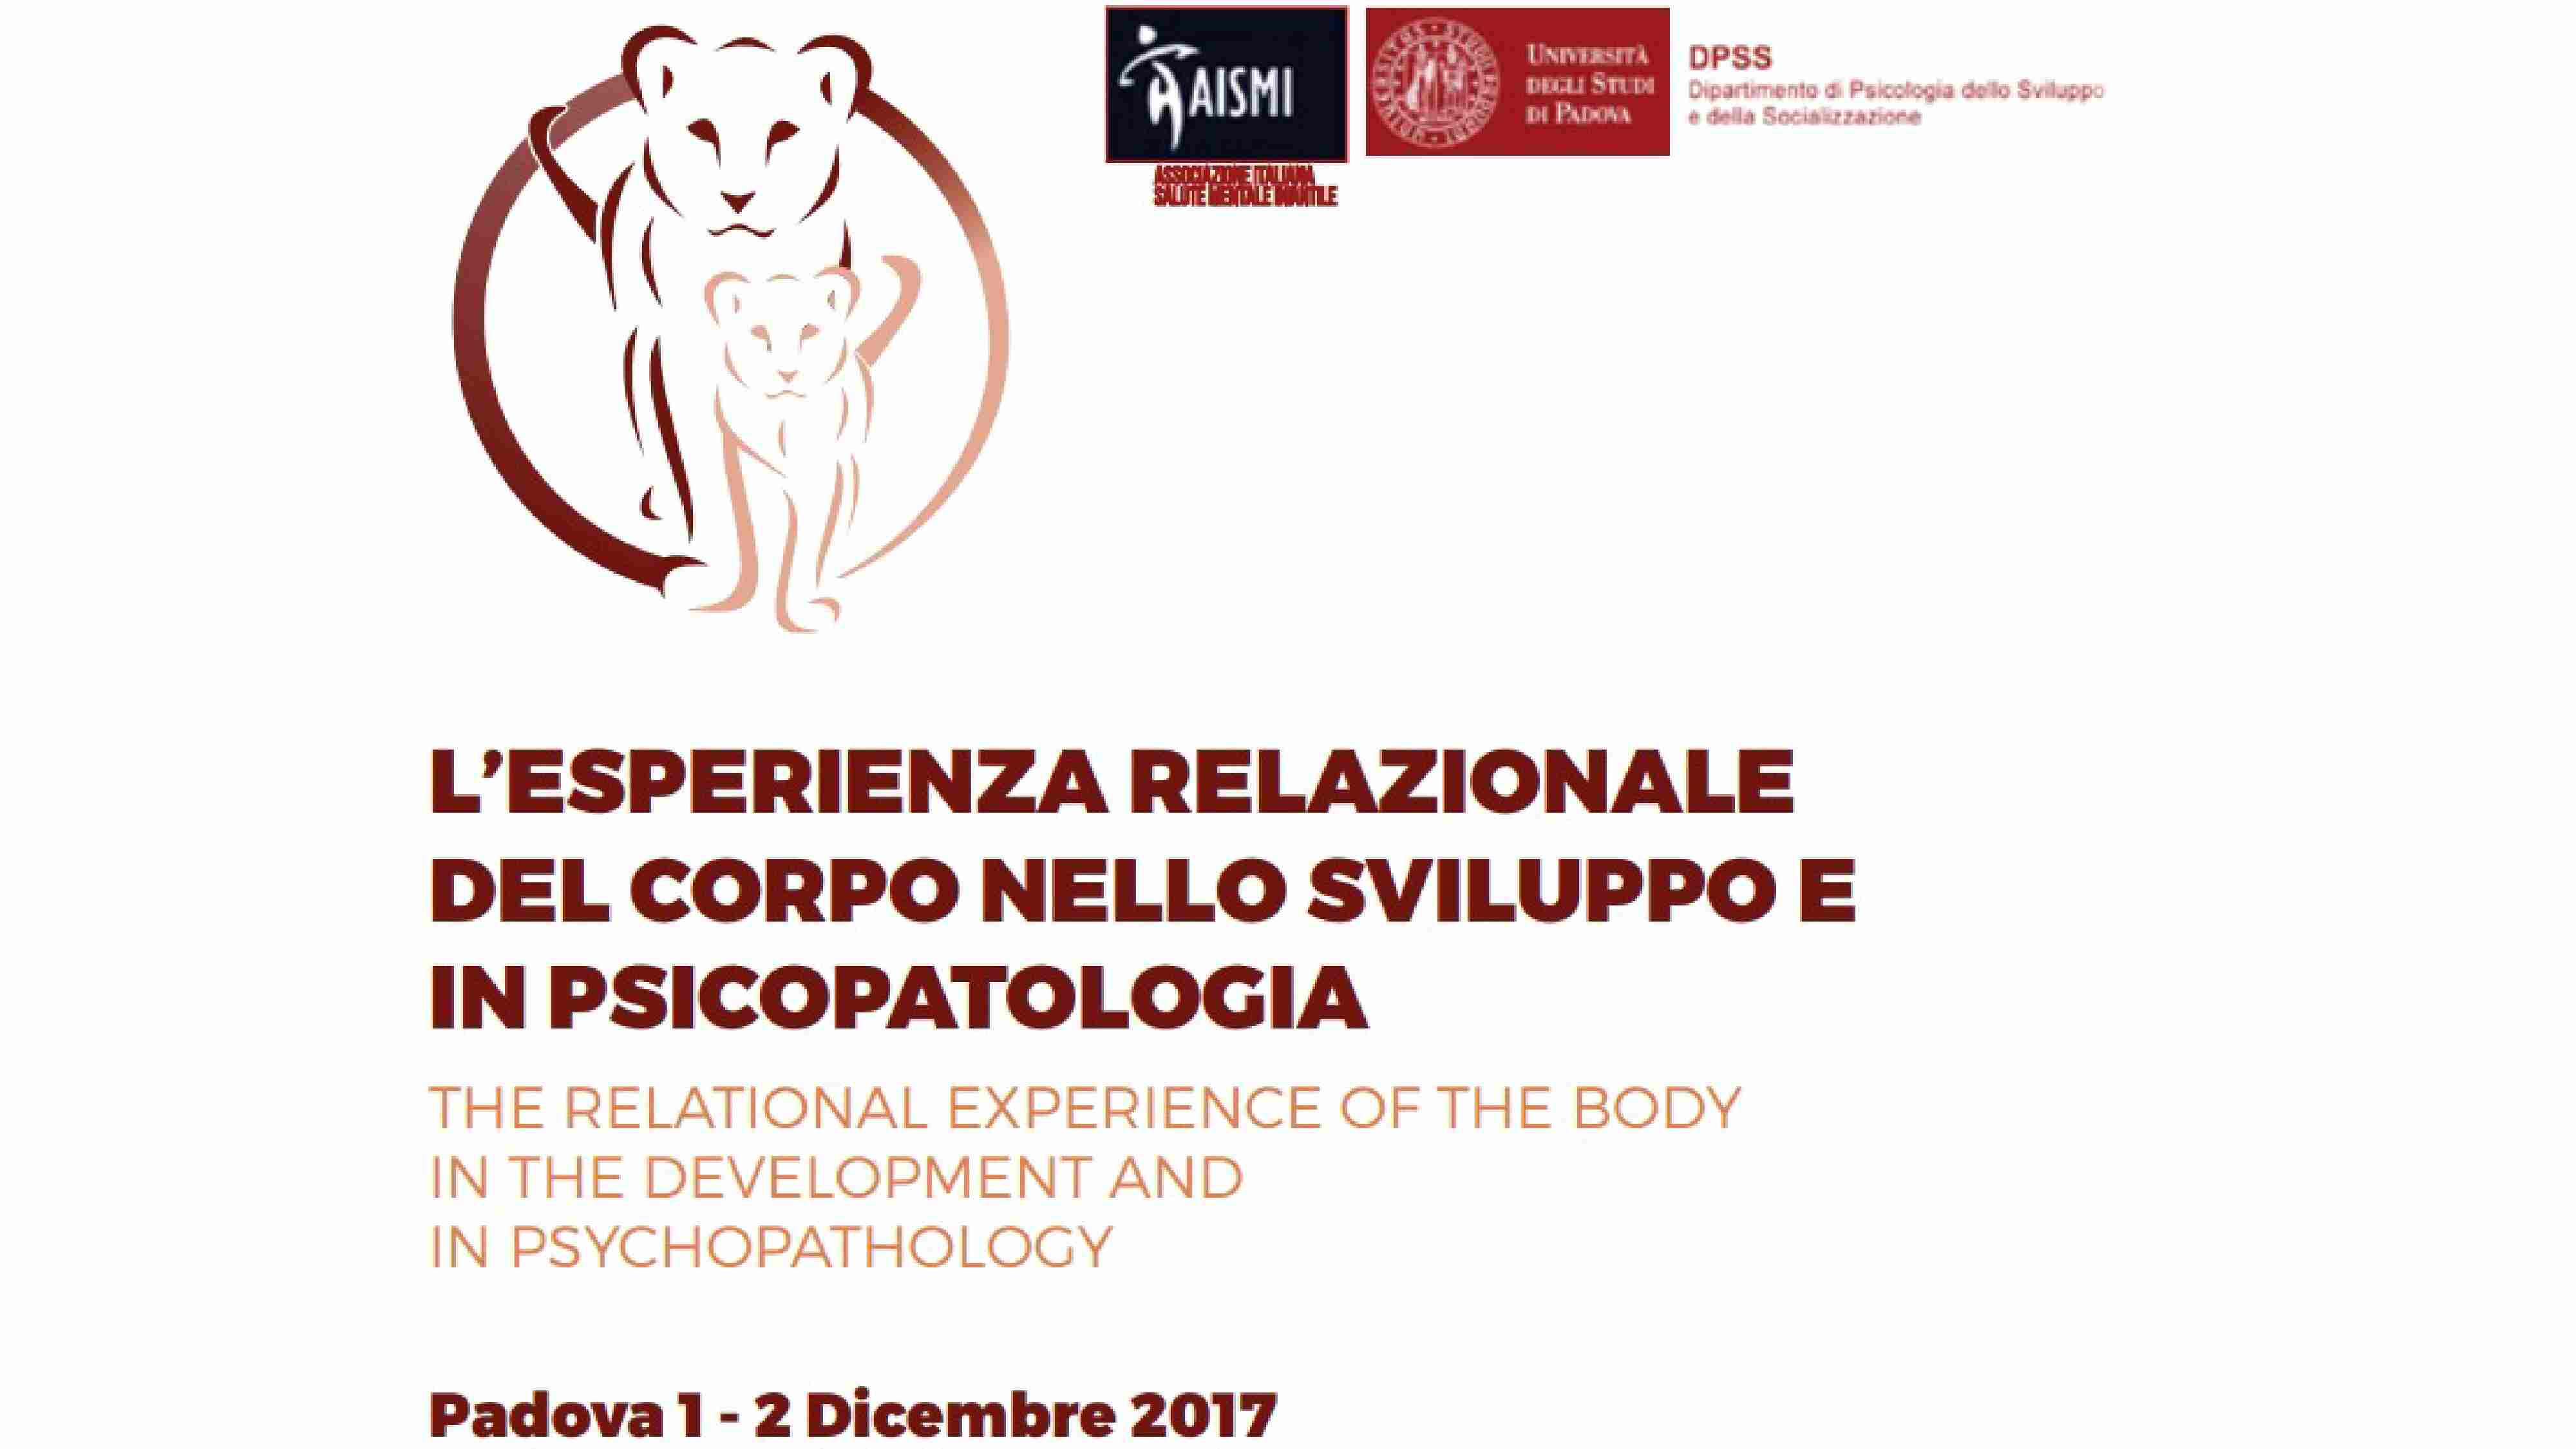 L'esperienza relazionale del corpo nello sviluppo e in psicopatologia - Padova 1-2 Dicembre 2017